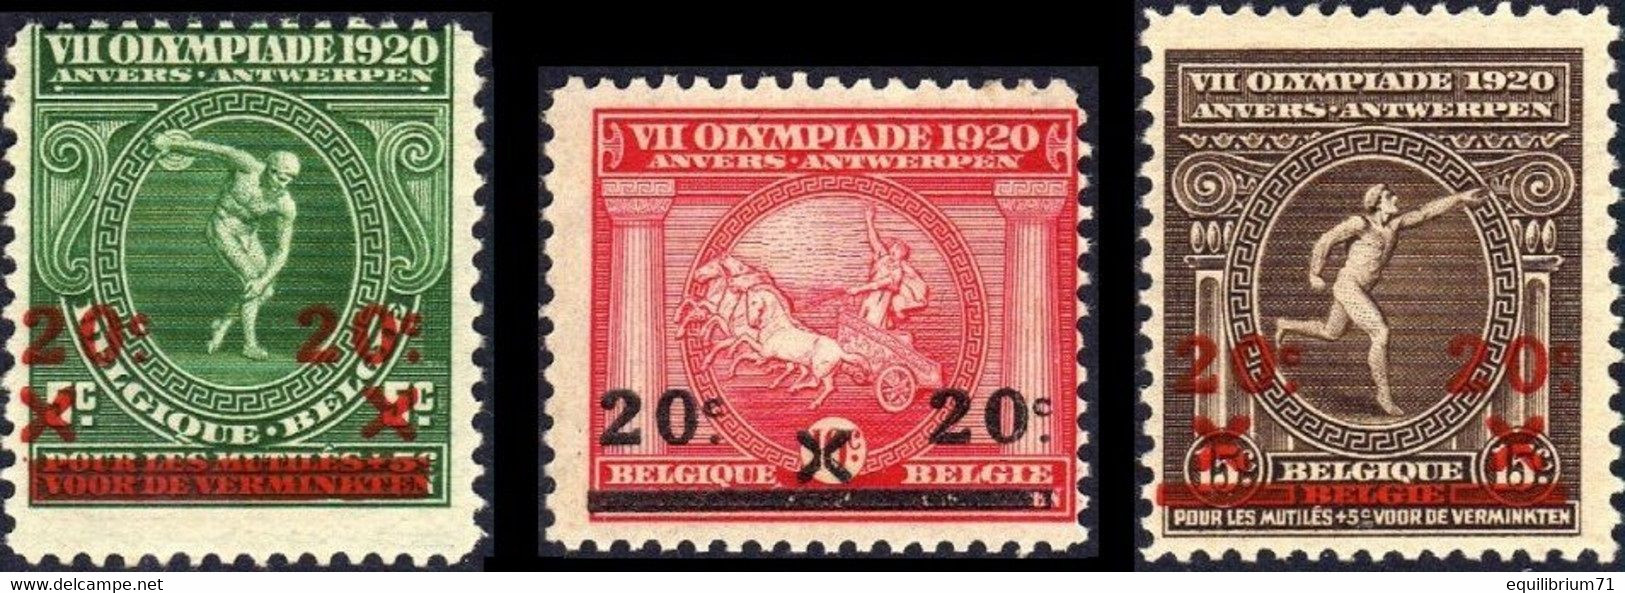 184/186* - VIIe Olympiade - Anvers / Antwerpen - BELGIQUE / BELGIË / BELGIEN - Sommer 1920: Antwerpen